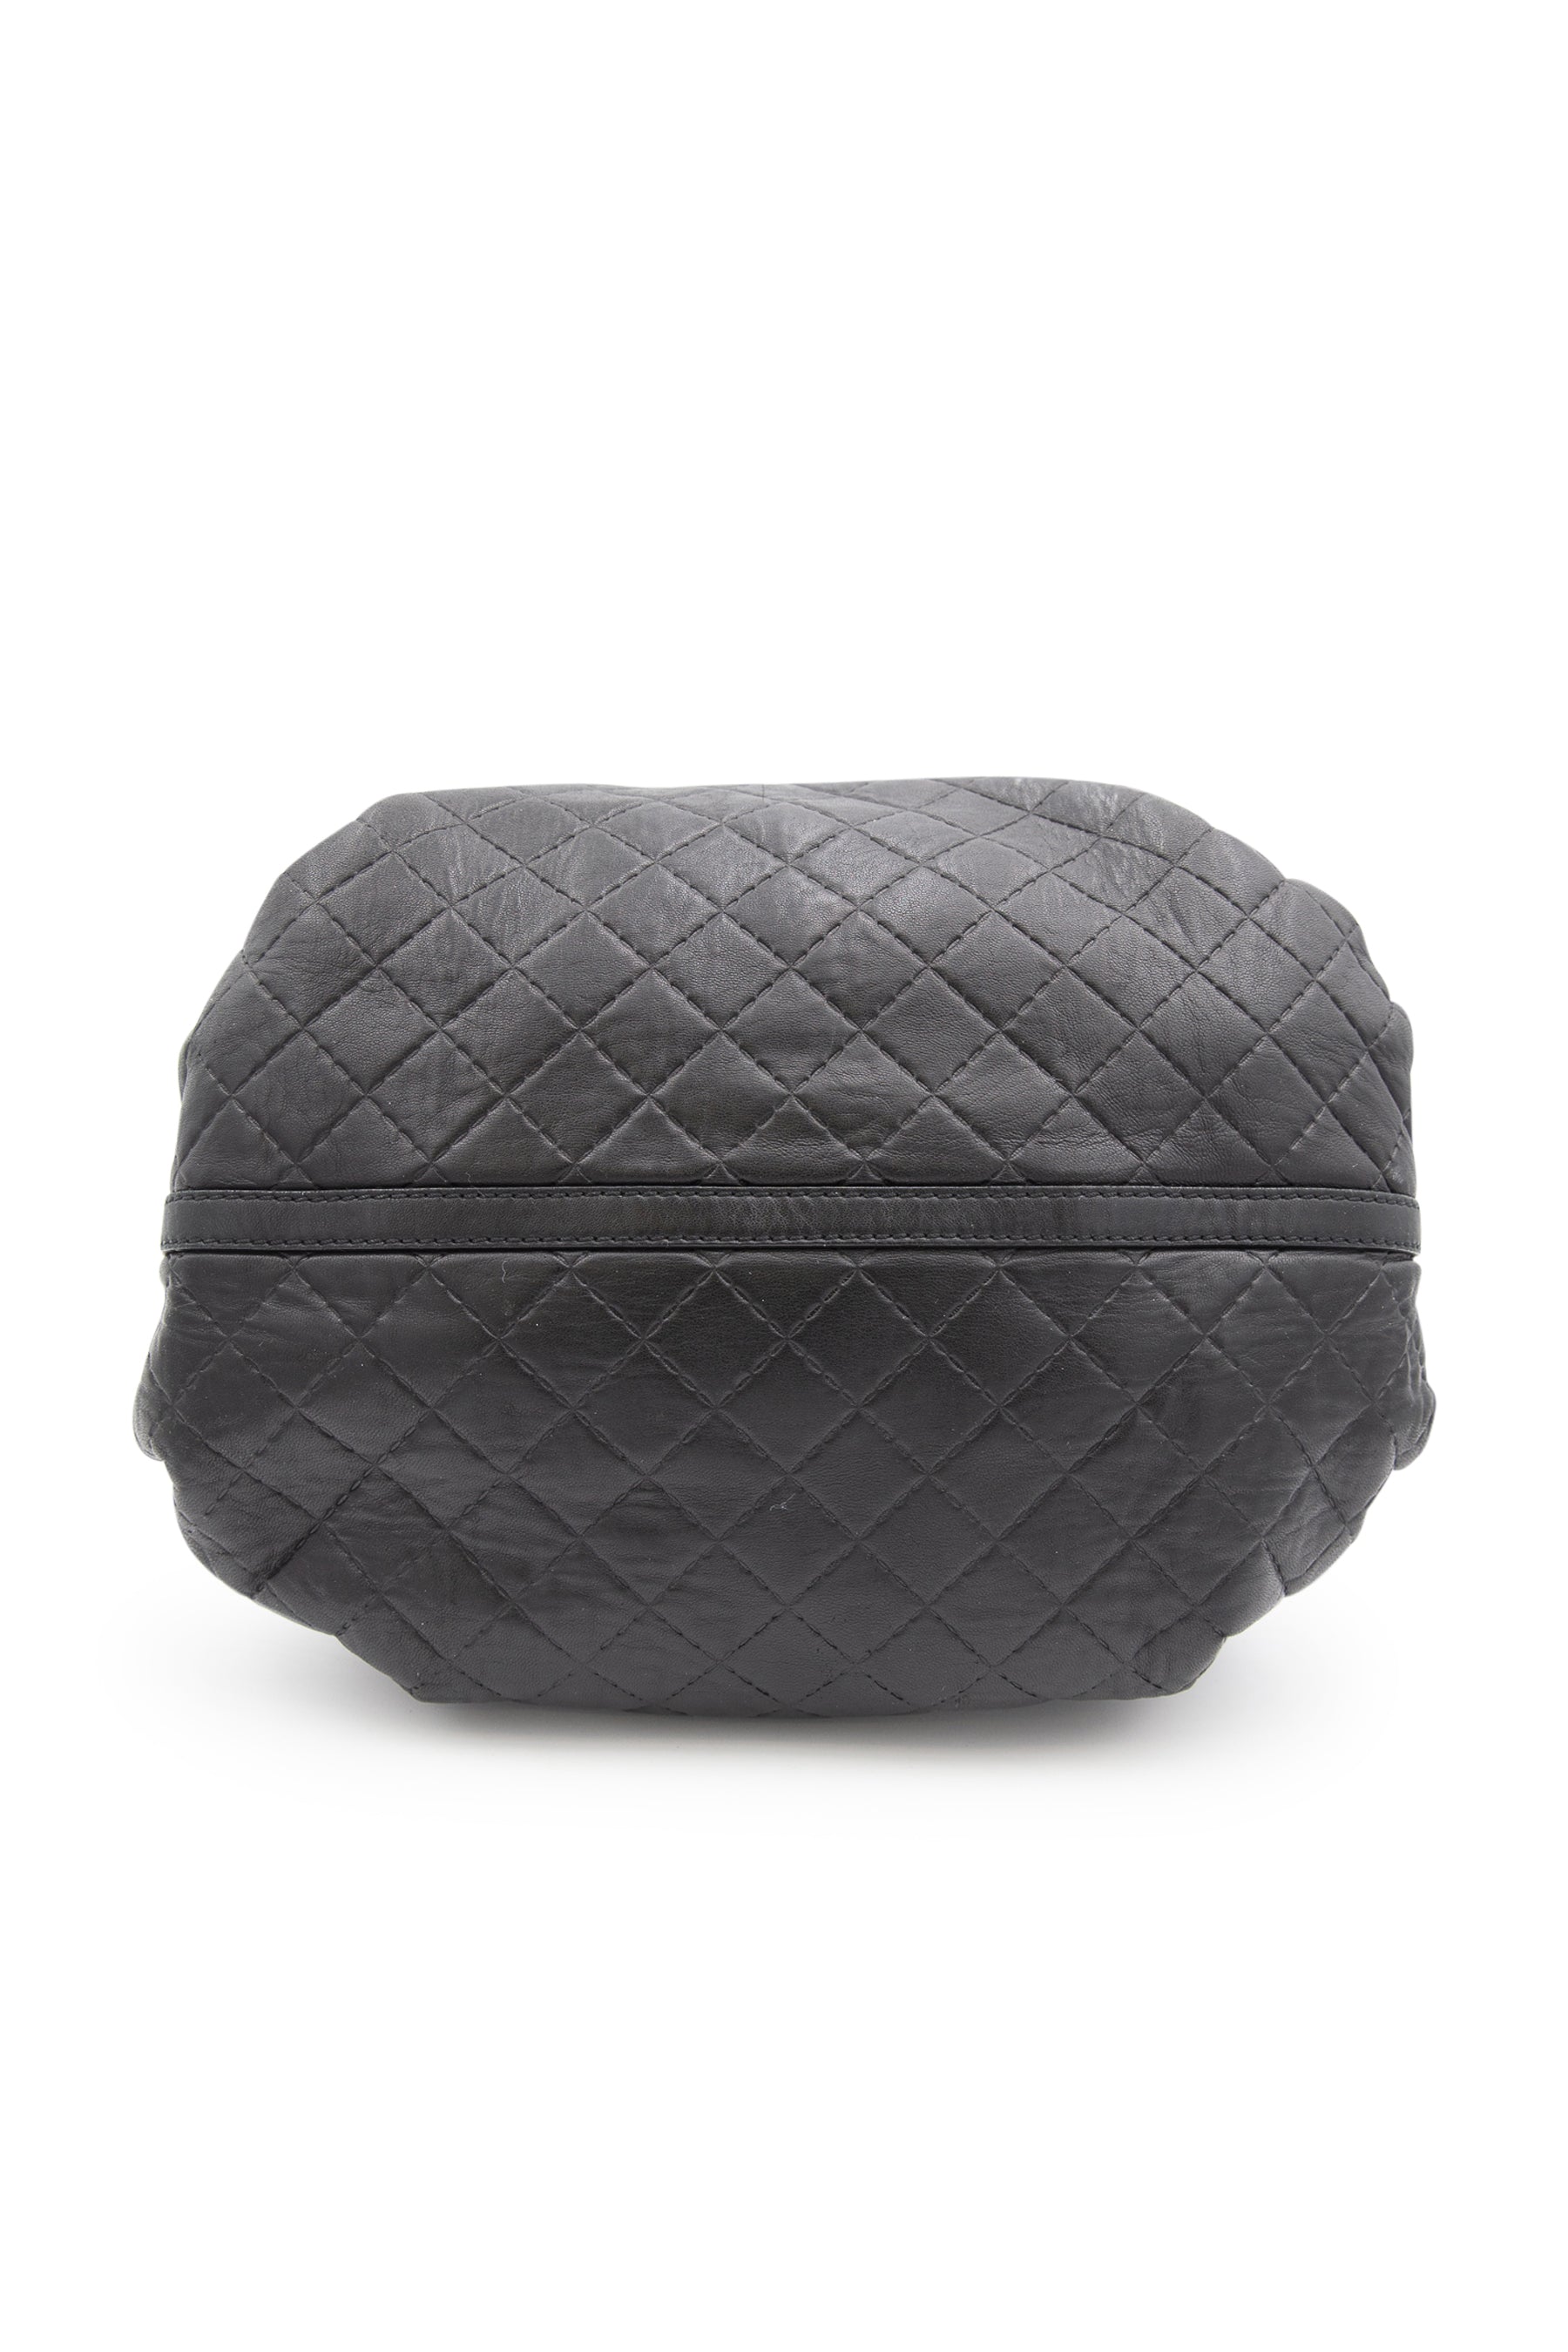 CH Gift Guide 2015-2016  Carolina herrera handbags, Carolina herrera,  Leather goodies